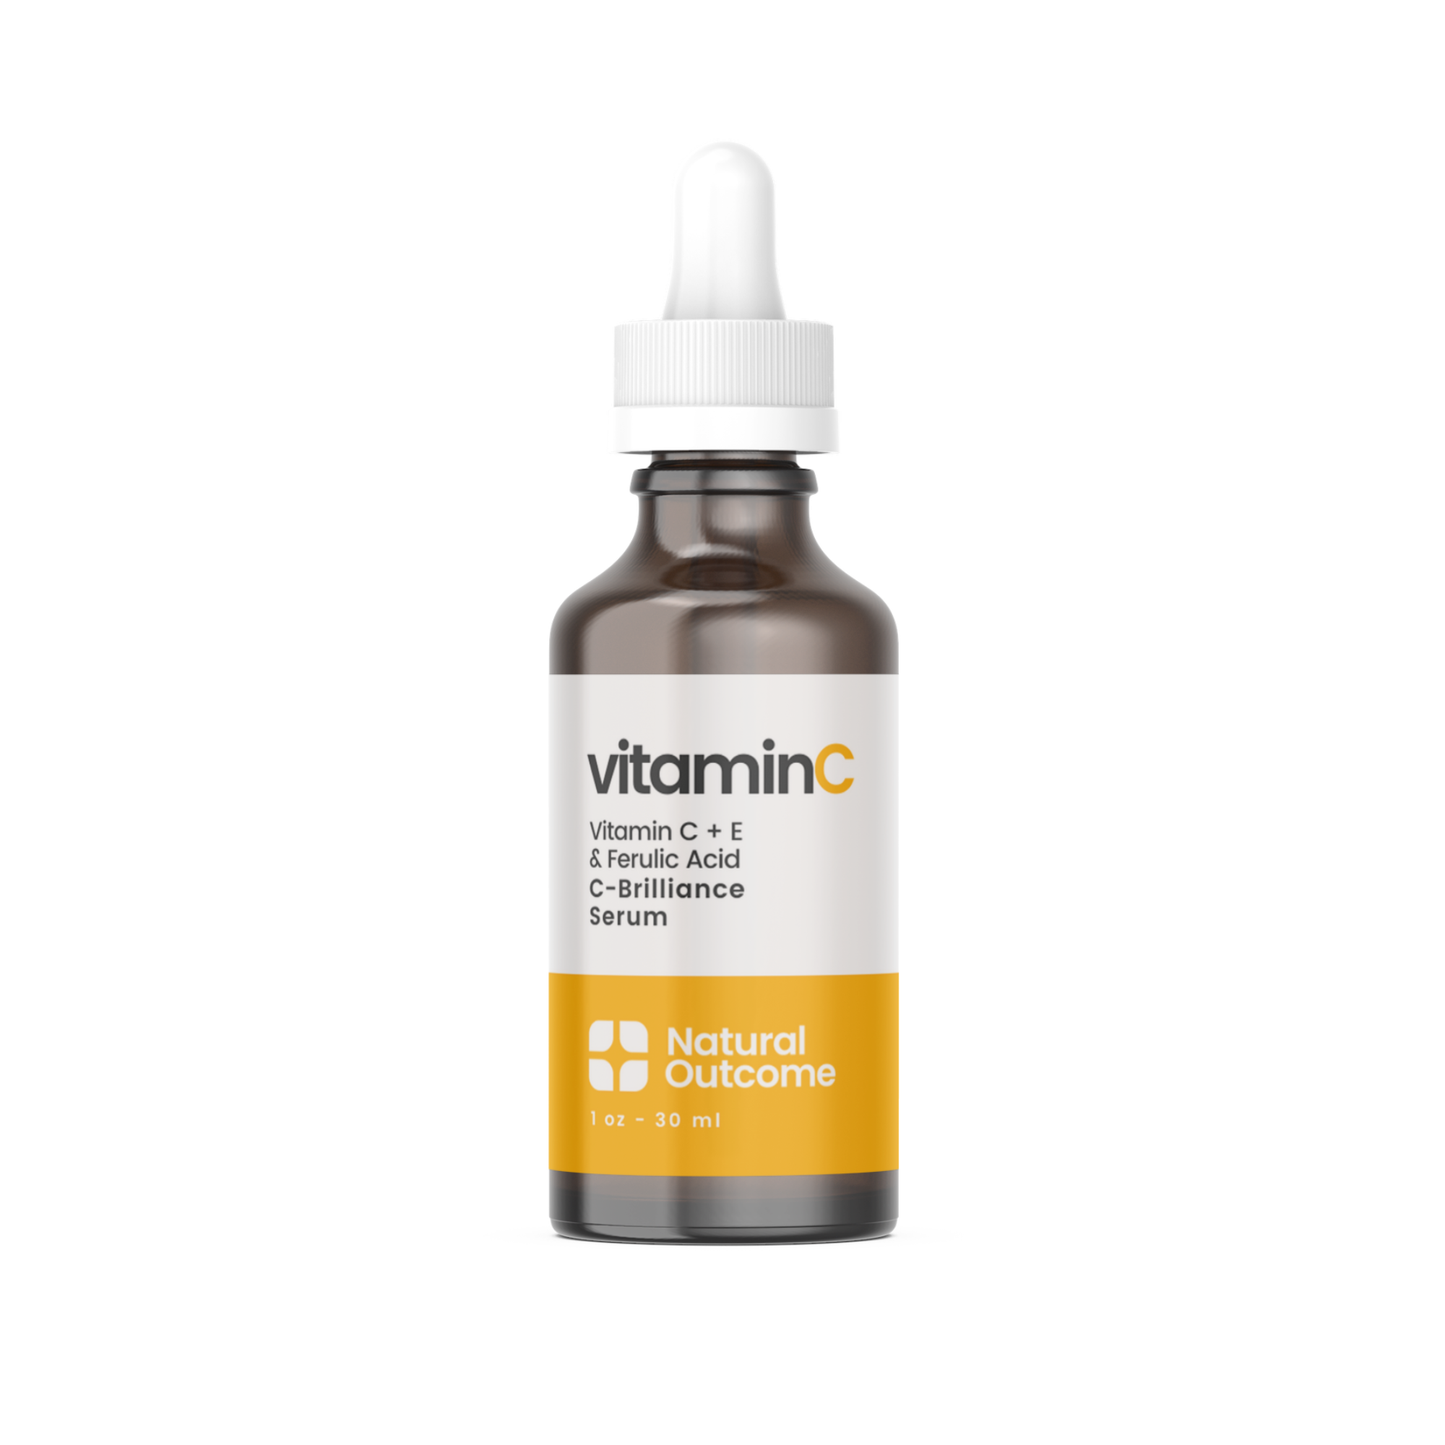 Vitamin C + E Serum with Ferulic Acid - C-Brilliance